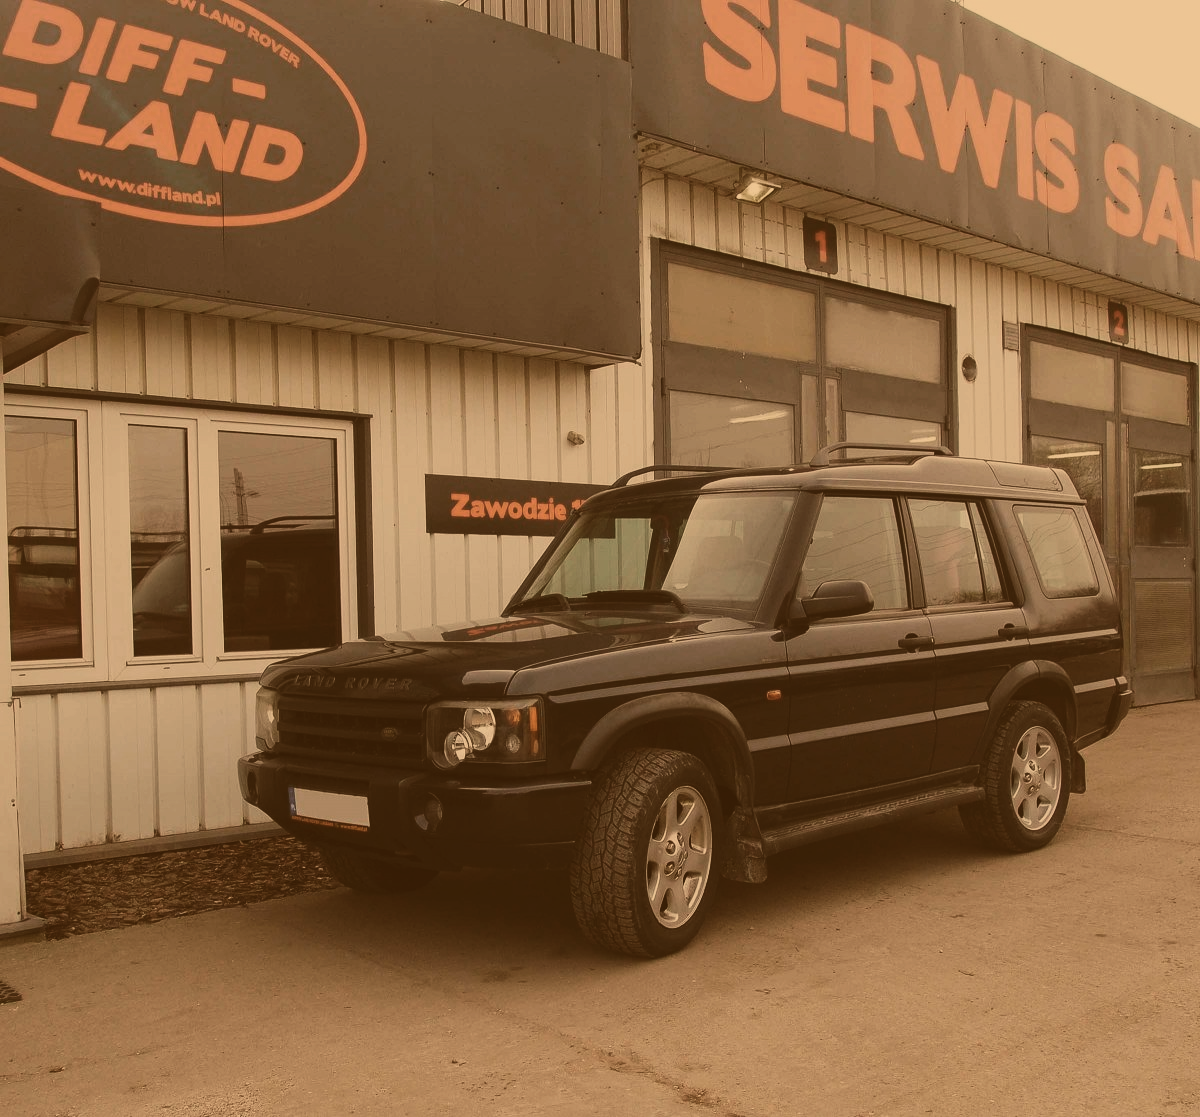 KOMIS diffland.pl Serwis Samochodów Land Rover i Range